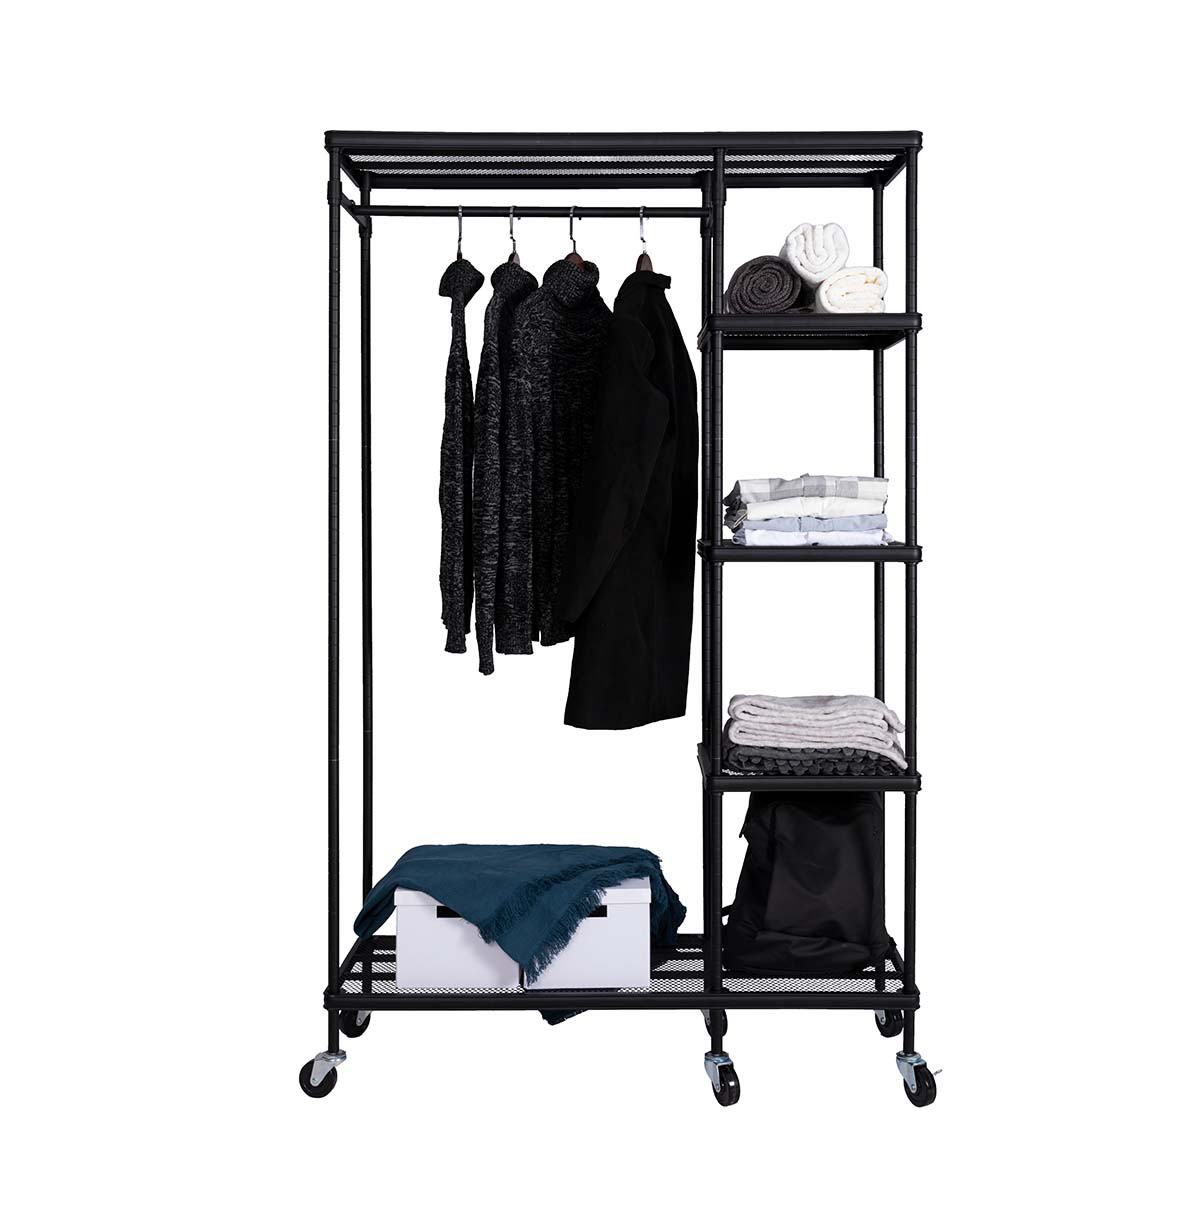 5-Tier Wire Closet Shelf Organizer With Hanging Rod  Freestanding Open Wardrobe Organizer